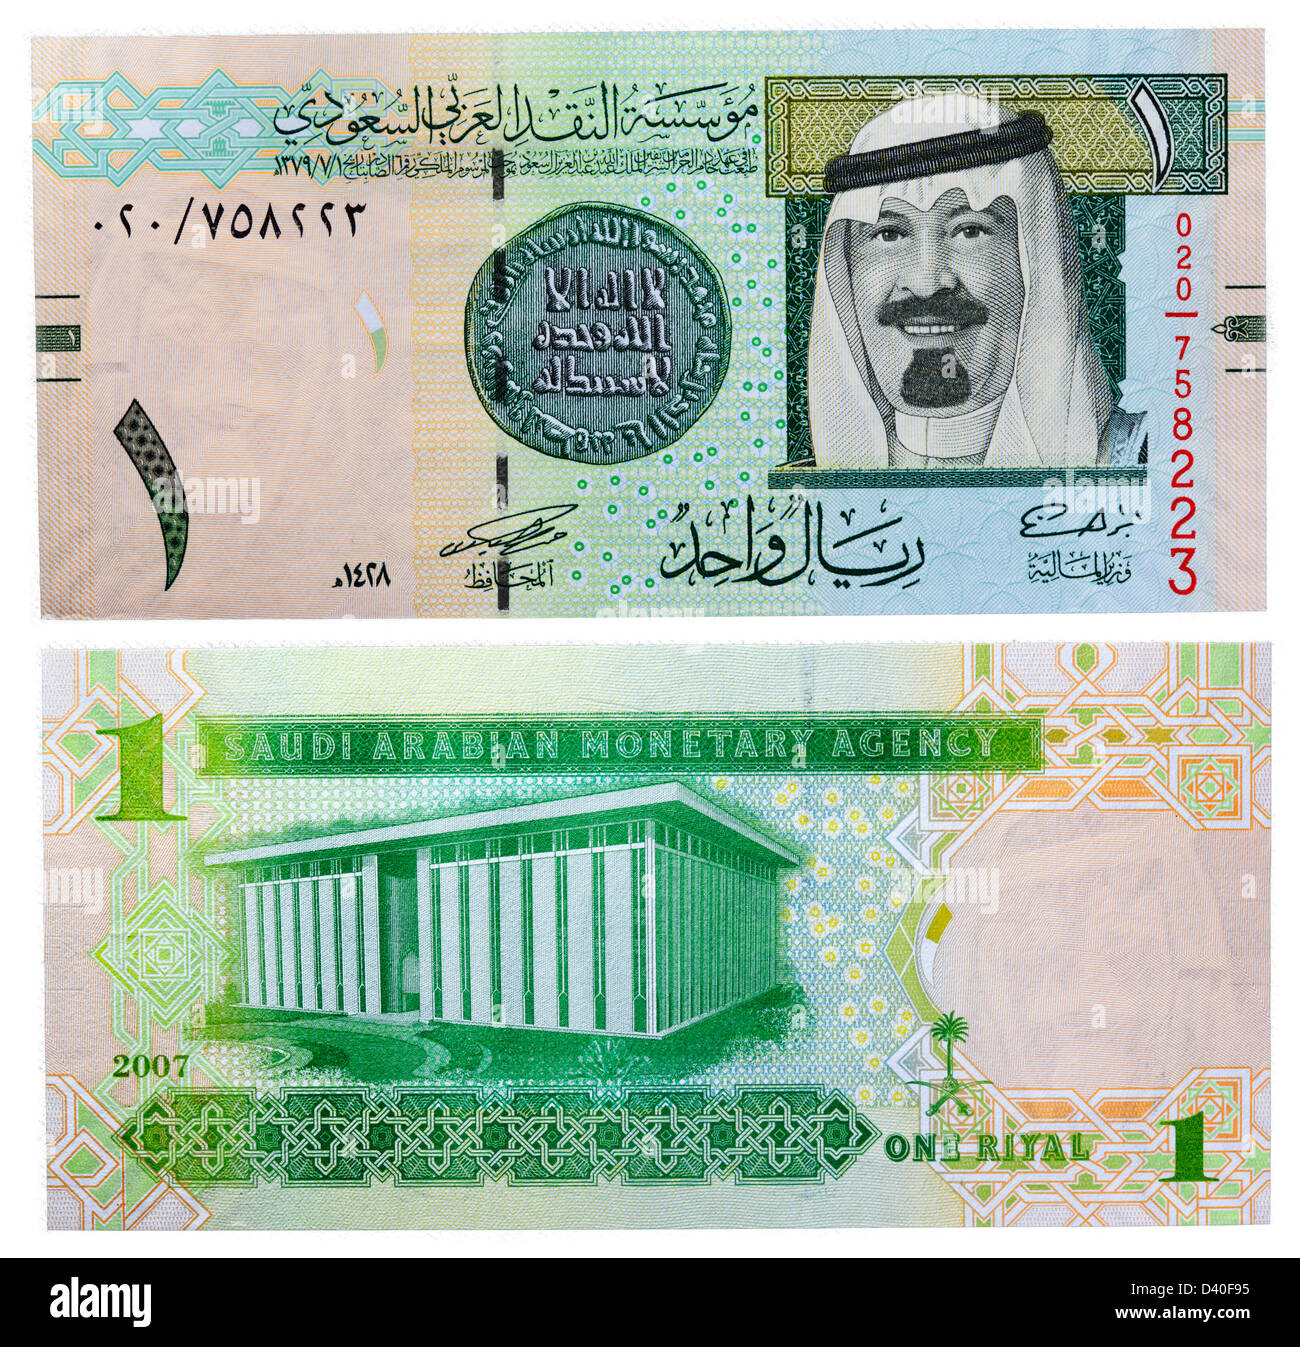 Billet de 1 Rial, le roi Abdallah de l'Arabie Saoudite et la construction de l'Autorité monétaire, l'Arabie Saoudite, 2007 Banque D'Images